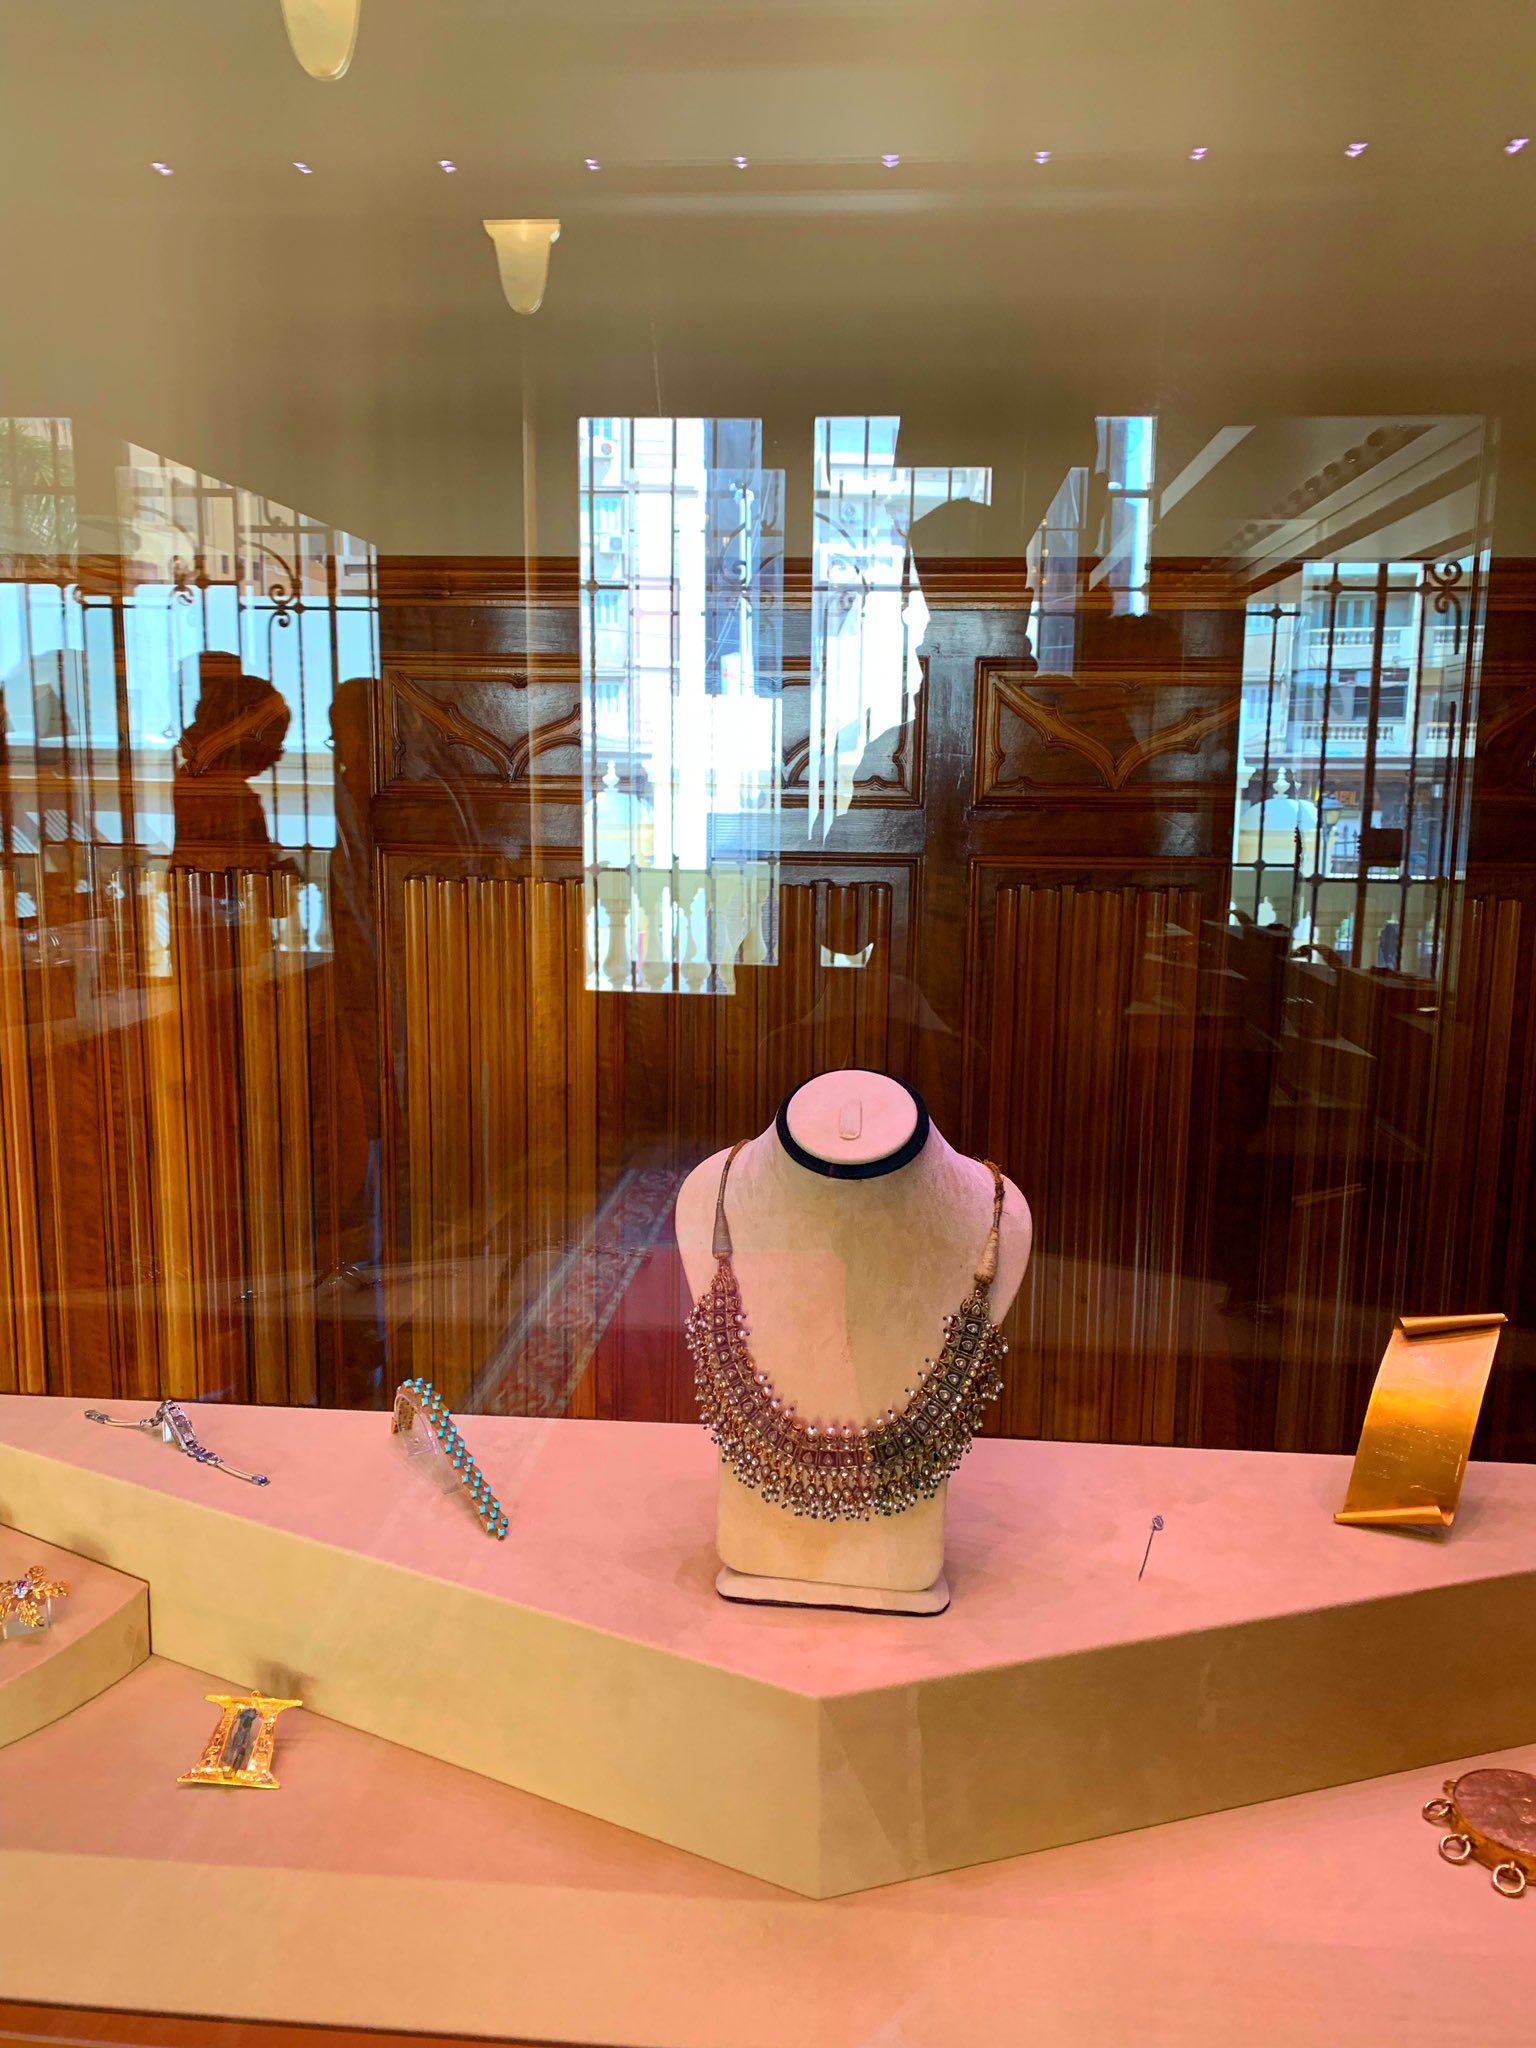 معلومات سريعة عن "متحف المجوهرات" بمصر_صحيفة الديرة